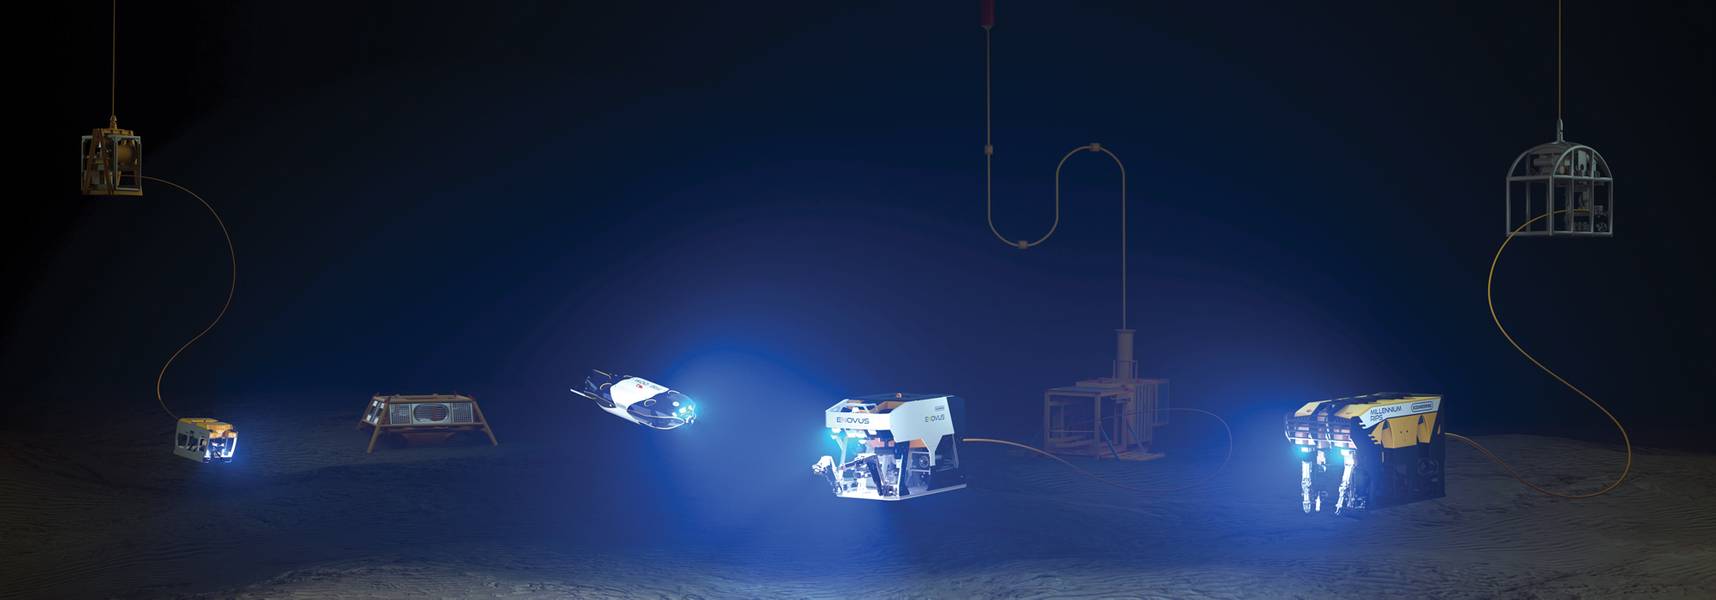 A linha de ROV da Oceaneering com veículos da próxima geração Freedom e E-ROV incluídos. Cortesia da Oceaneering International